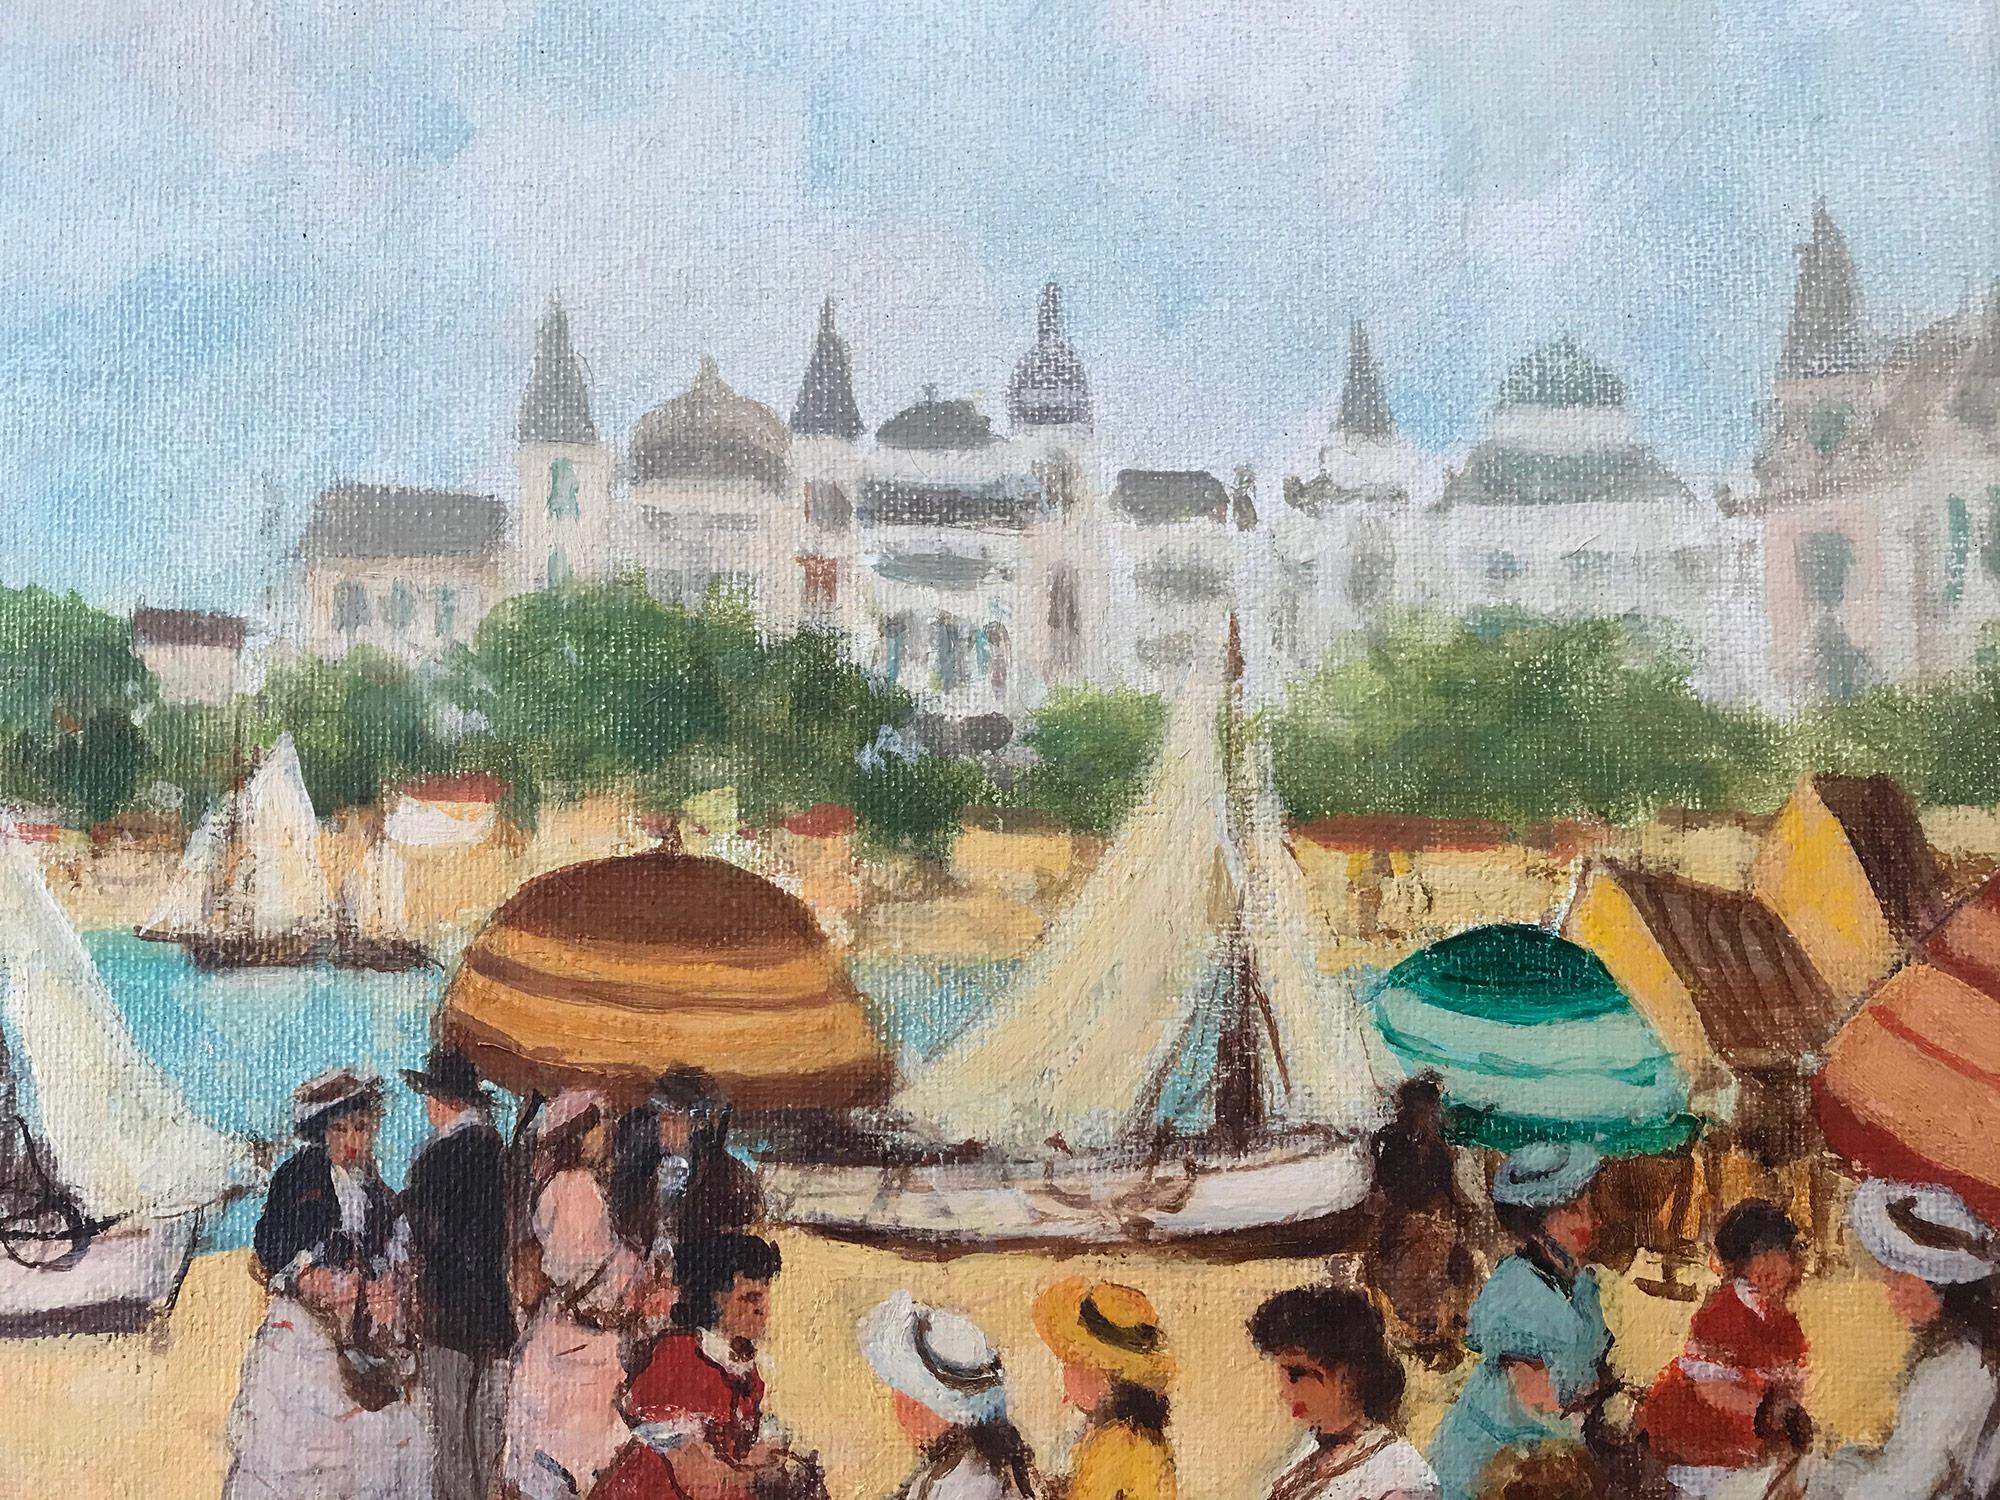 Ein atemberaubendes Ölgemälde, das Figuren am Strand an einem sonnigen Tag in Nizza, Frankreich, im 20. Jahrhundert darstellt. Die leuchtenden Farben und die impressionistischen Pinselstriche sind sowohl detailliert als auch präzise ausgeführt. Die